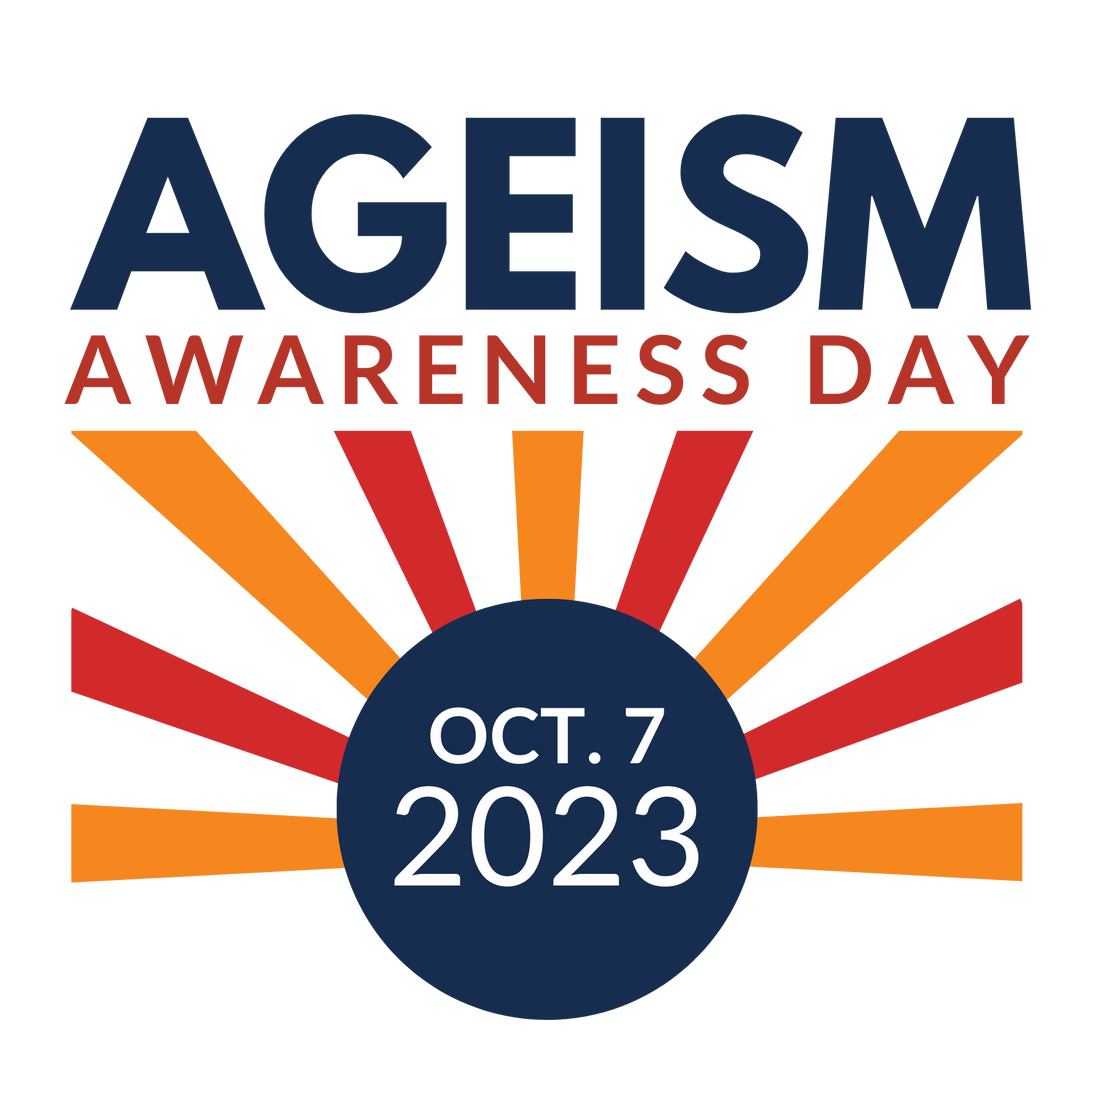 Ageism Awareness Day